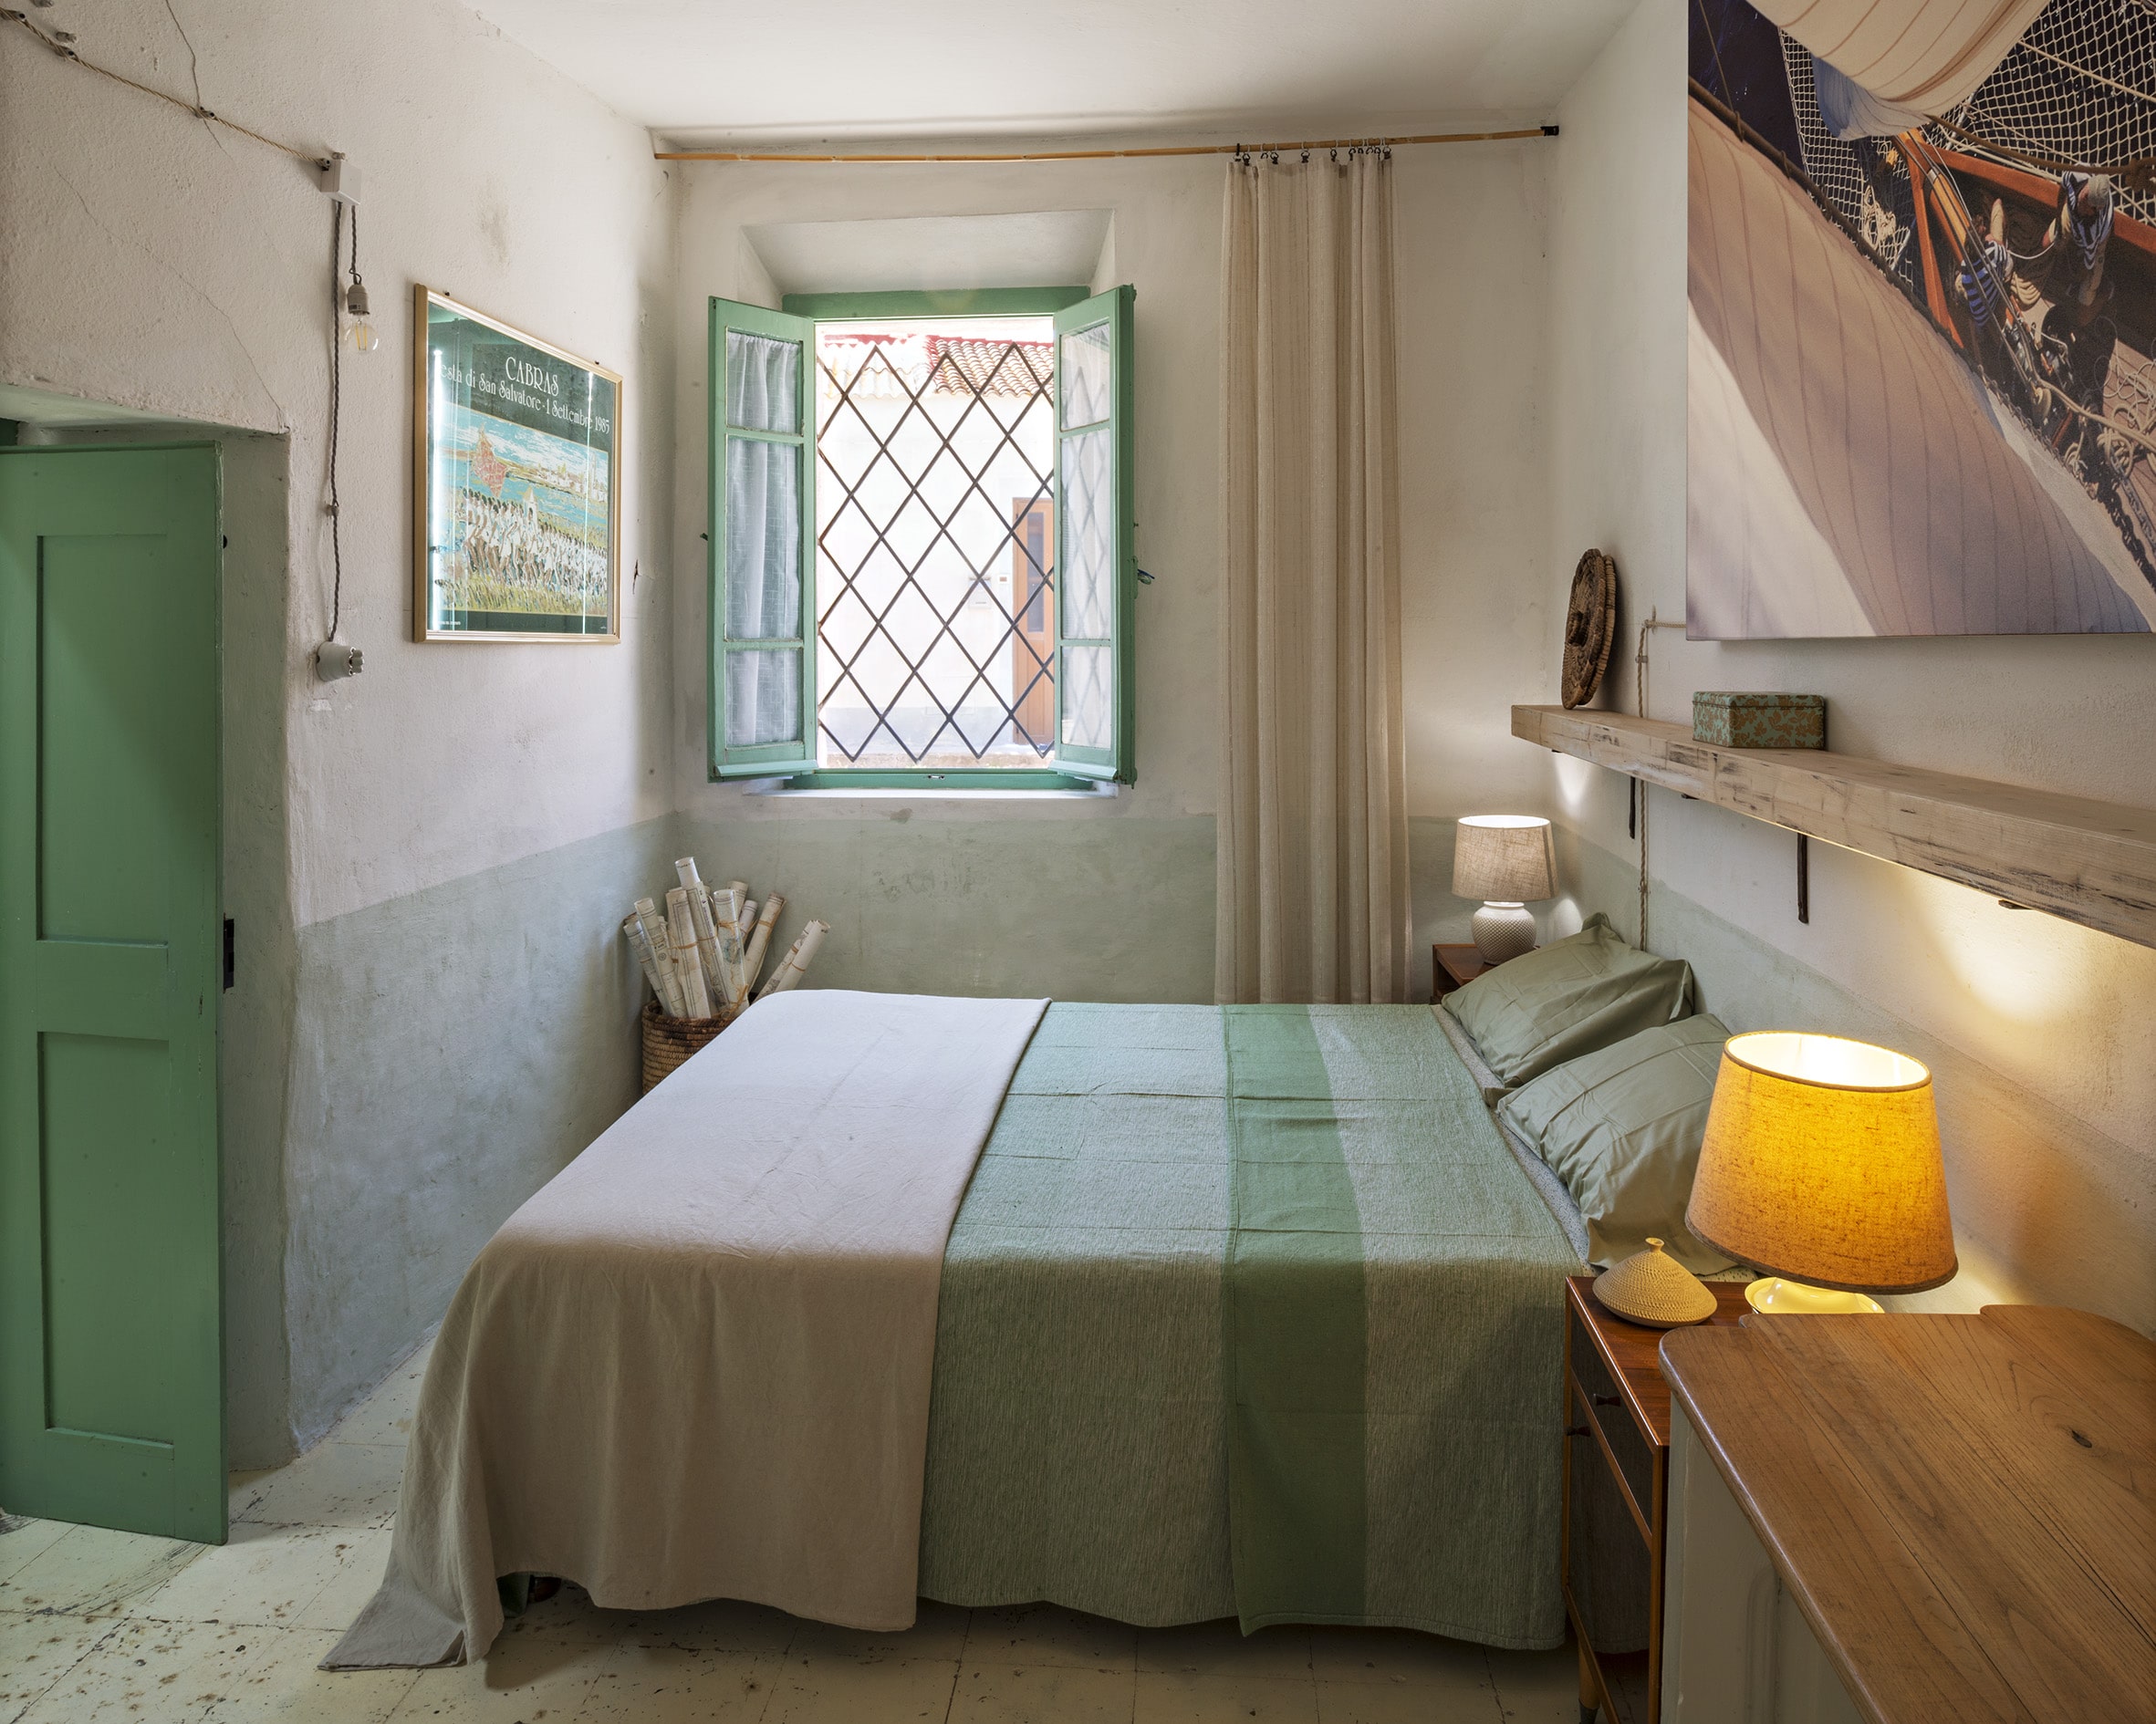 Letto della Camera Trinchetta, Limòlo House, bed and breakfast a Cabras ed Eco Hotel in Sardegna - Bioarchitettura a Cabras, soggiorno sostenibile in Sardegna